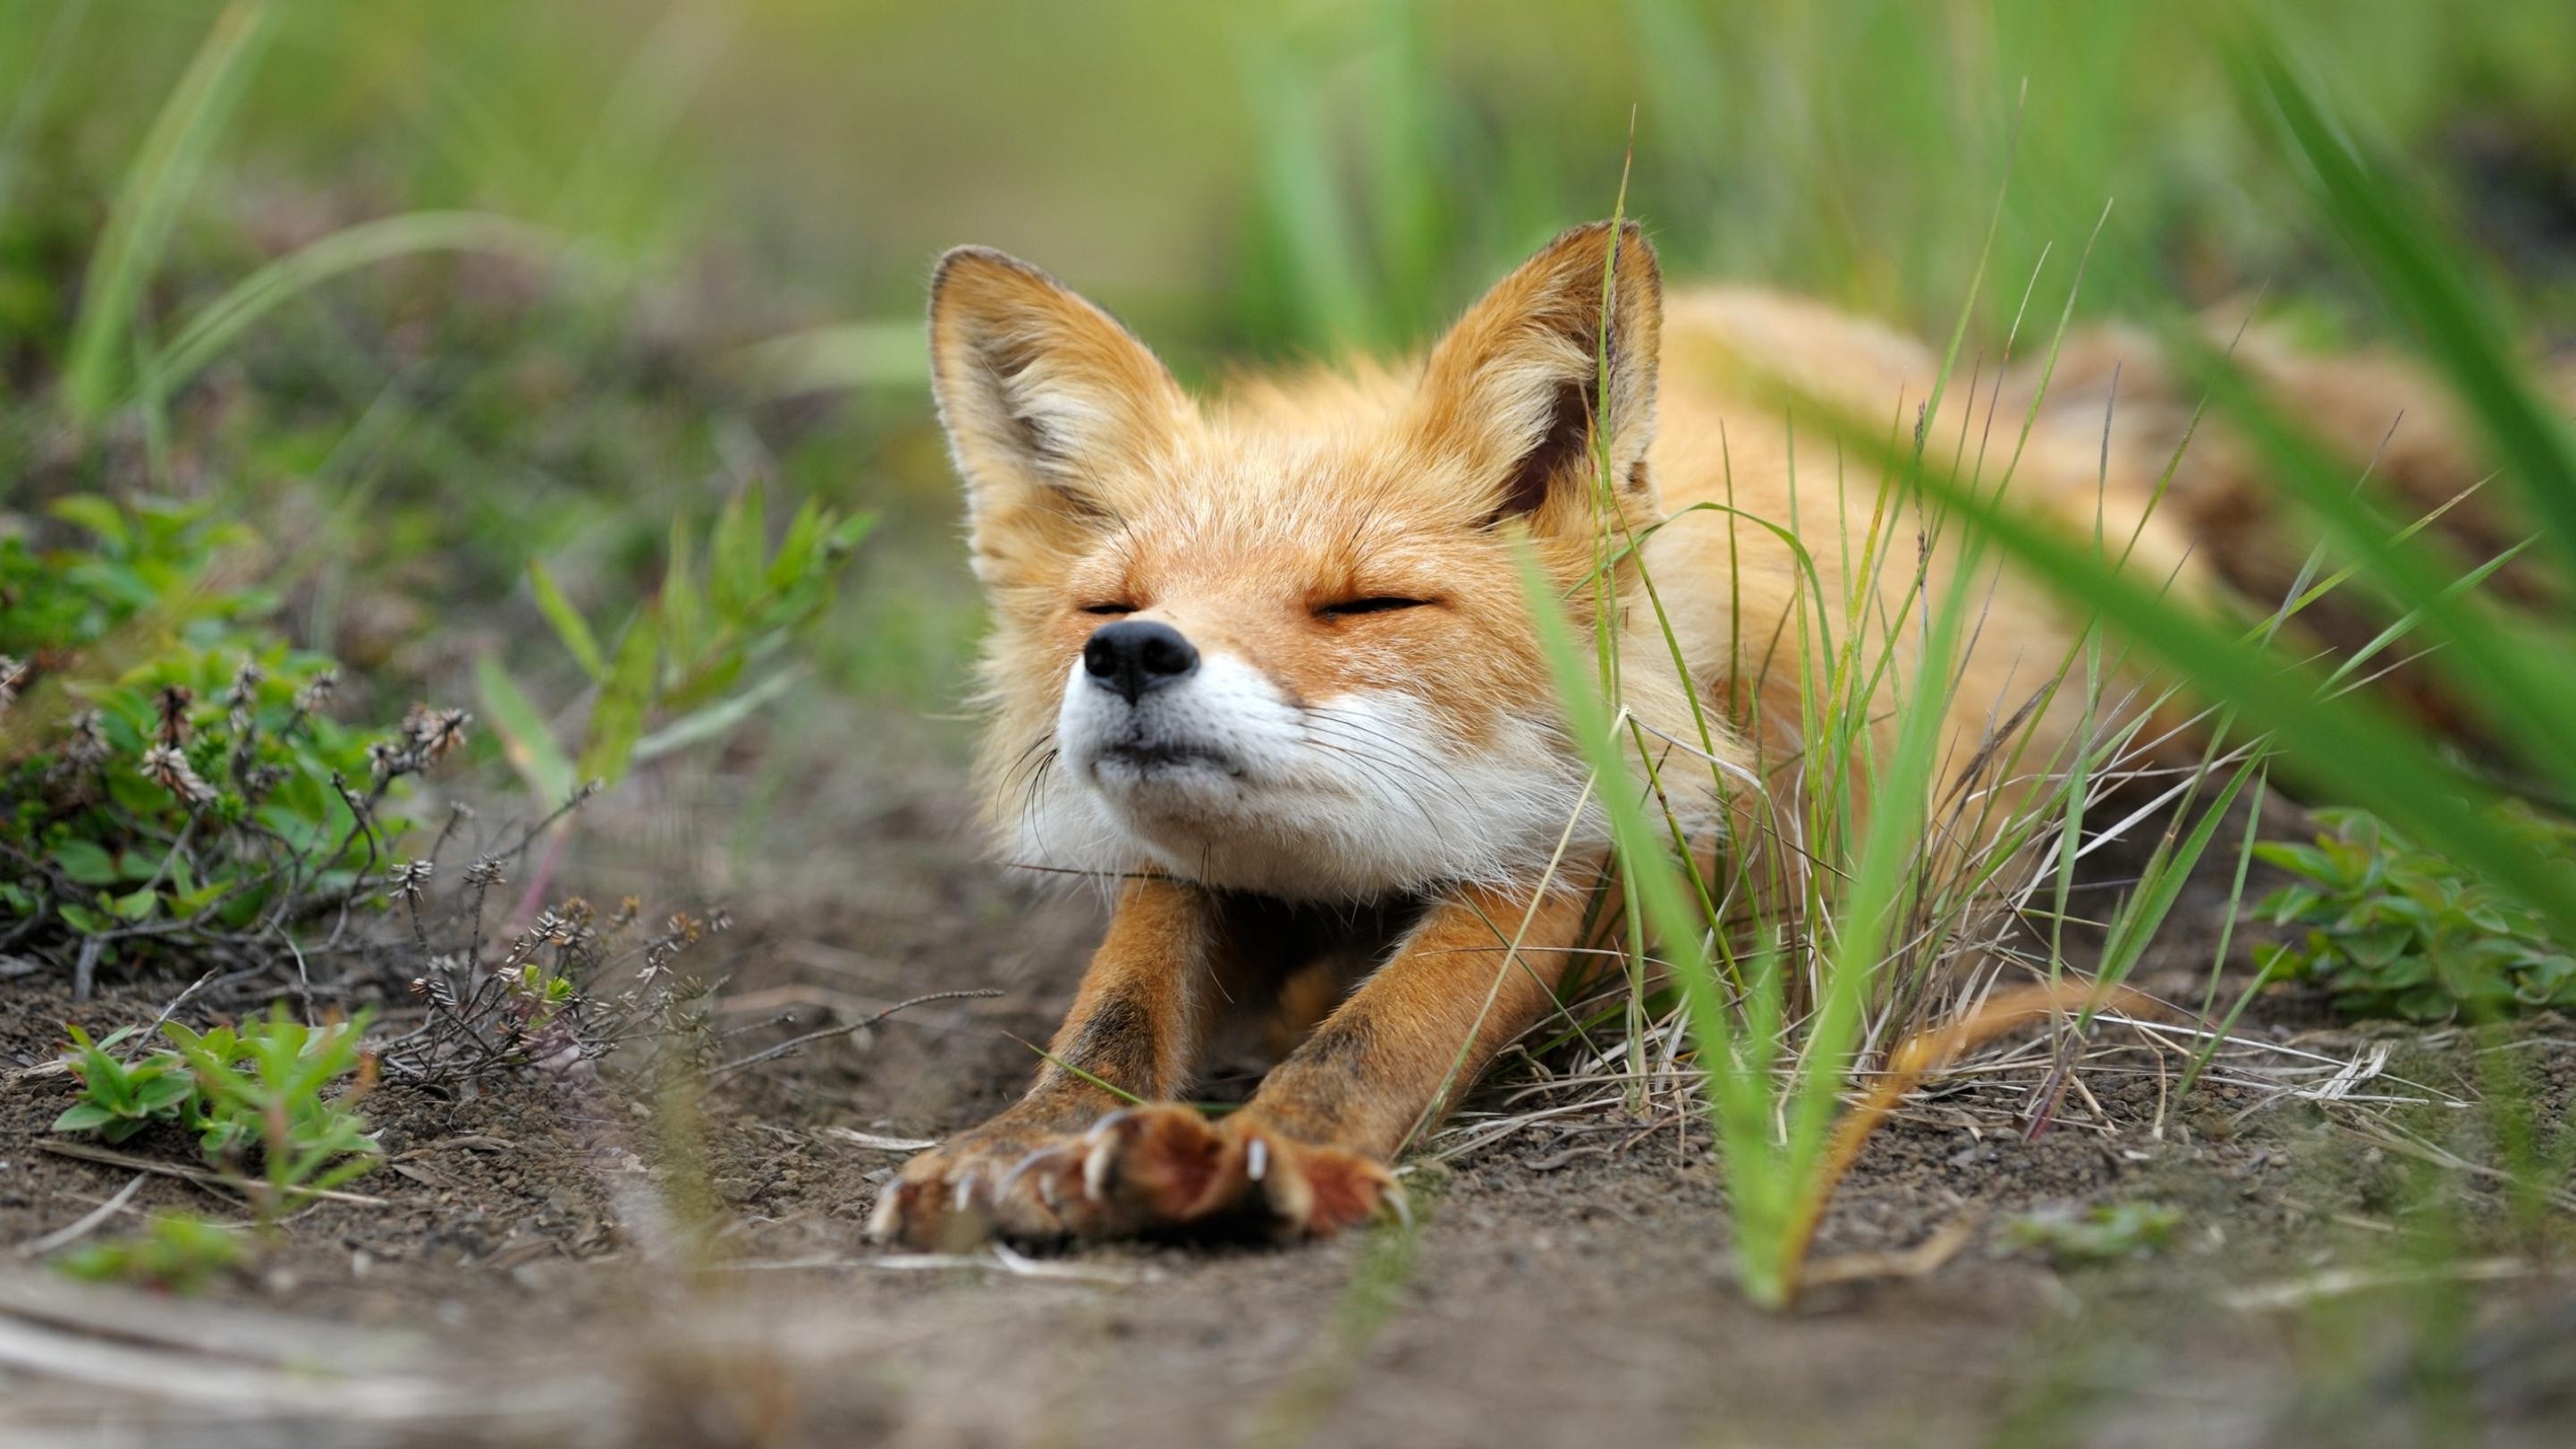 fox art wallpaper,mammal,fox,vertebrate,red fox,wildlife